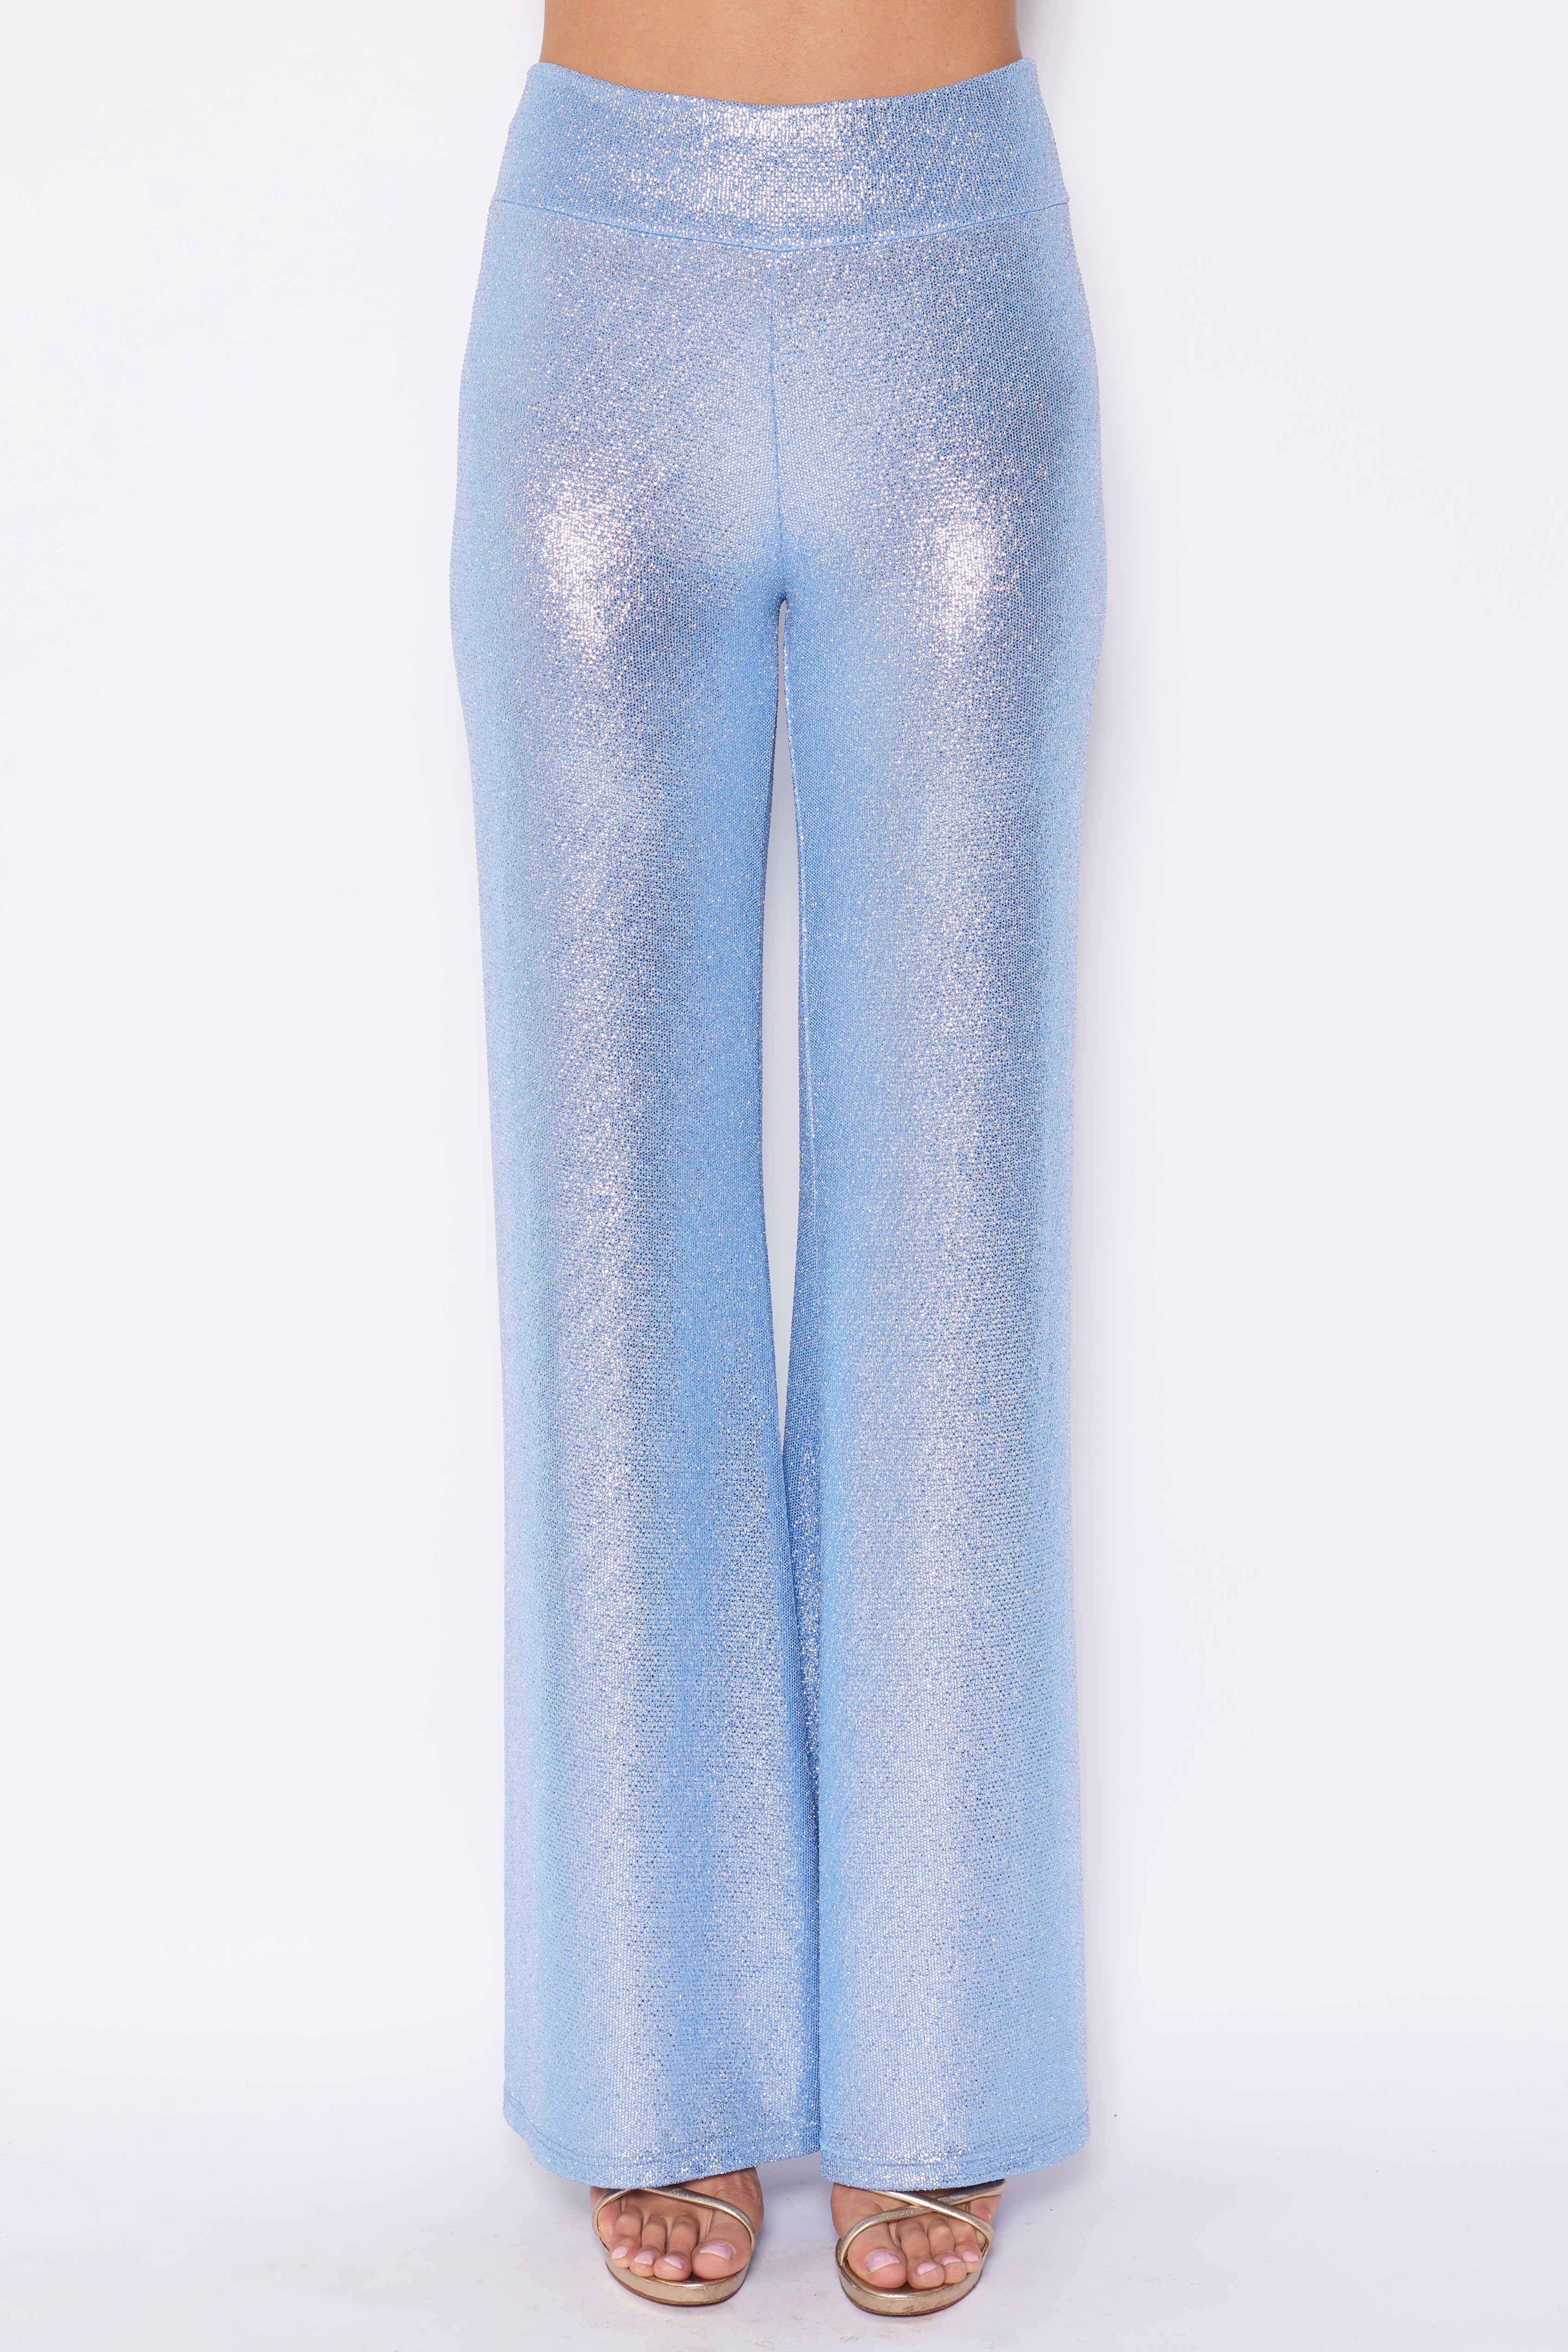 MIMI - azure lurex palazzo pants